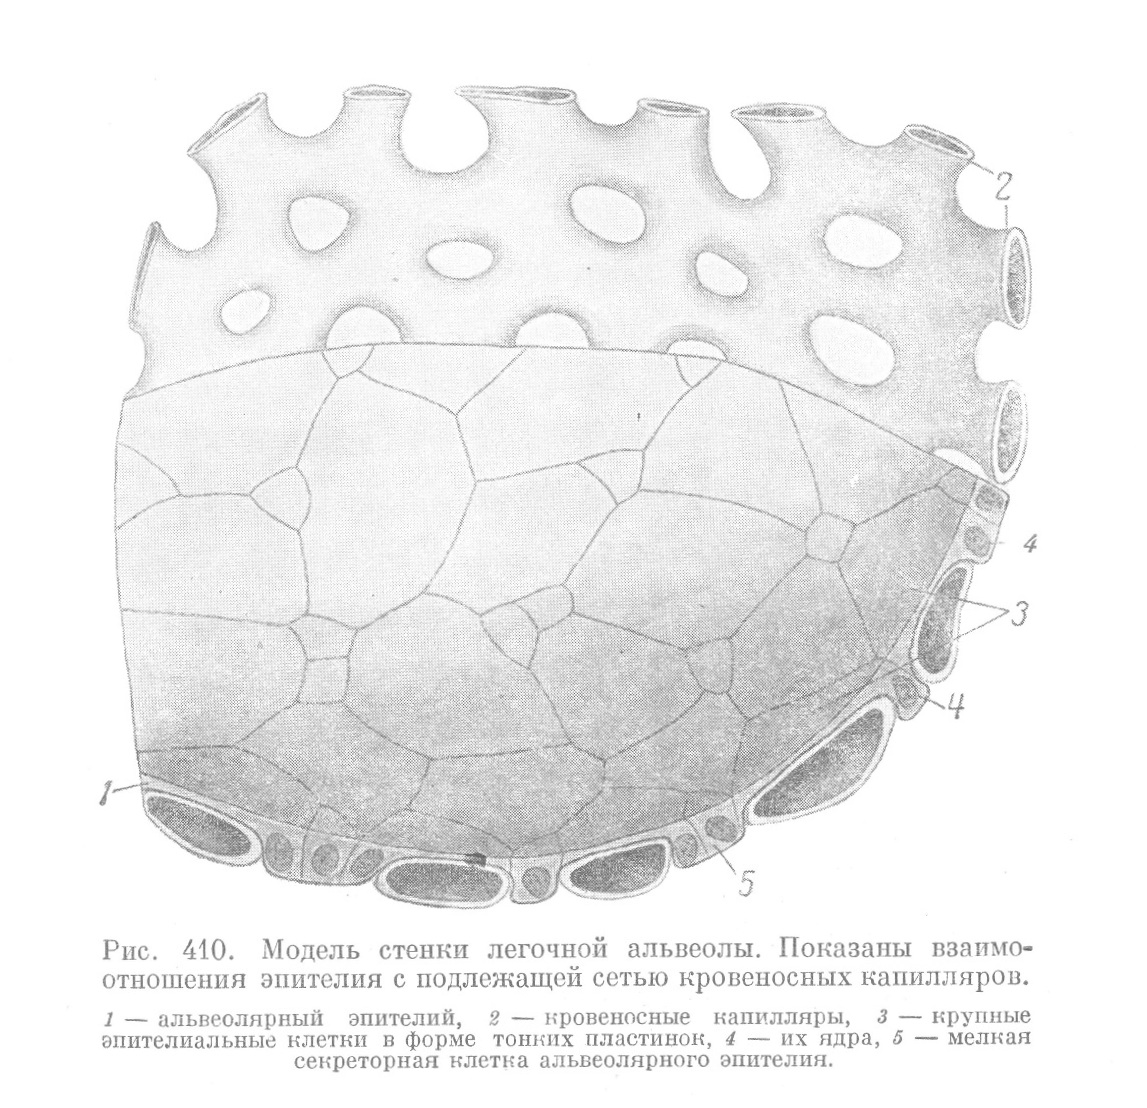 Модель стенки легочной альвеолы. Показаны взаимоотношения эпителия с подлежащей сетью кровеносных капилляров